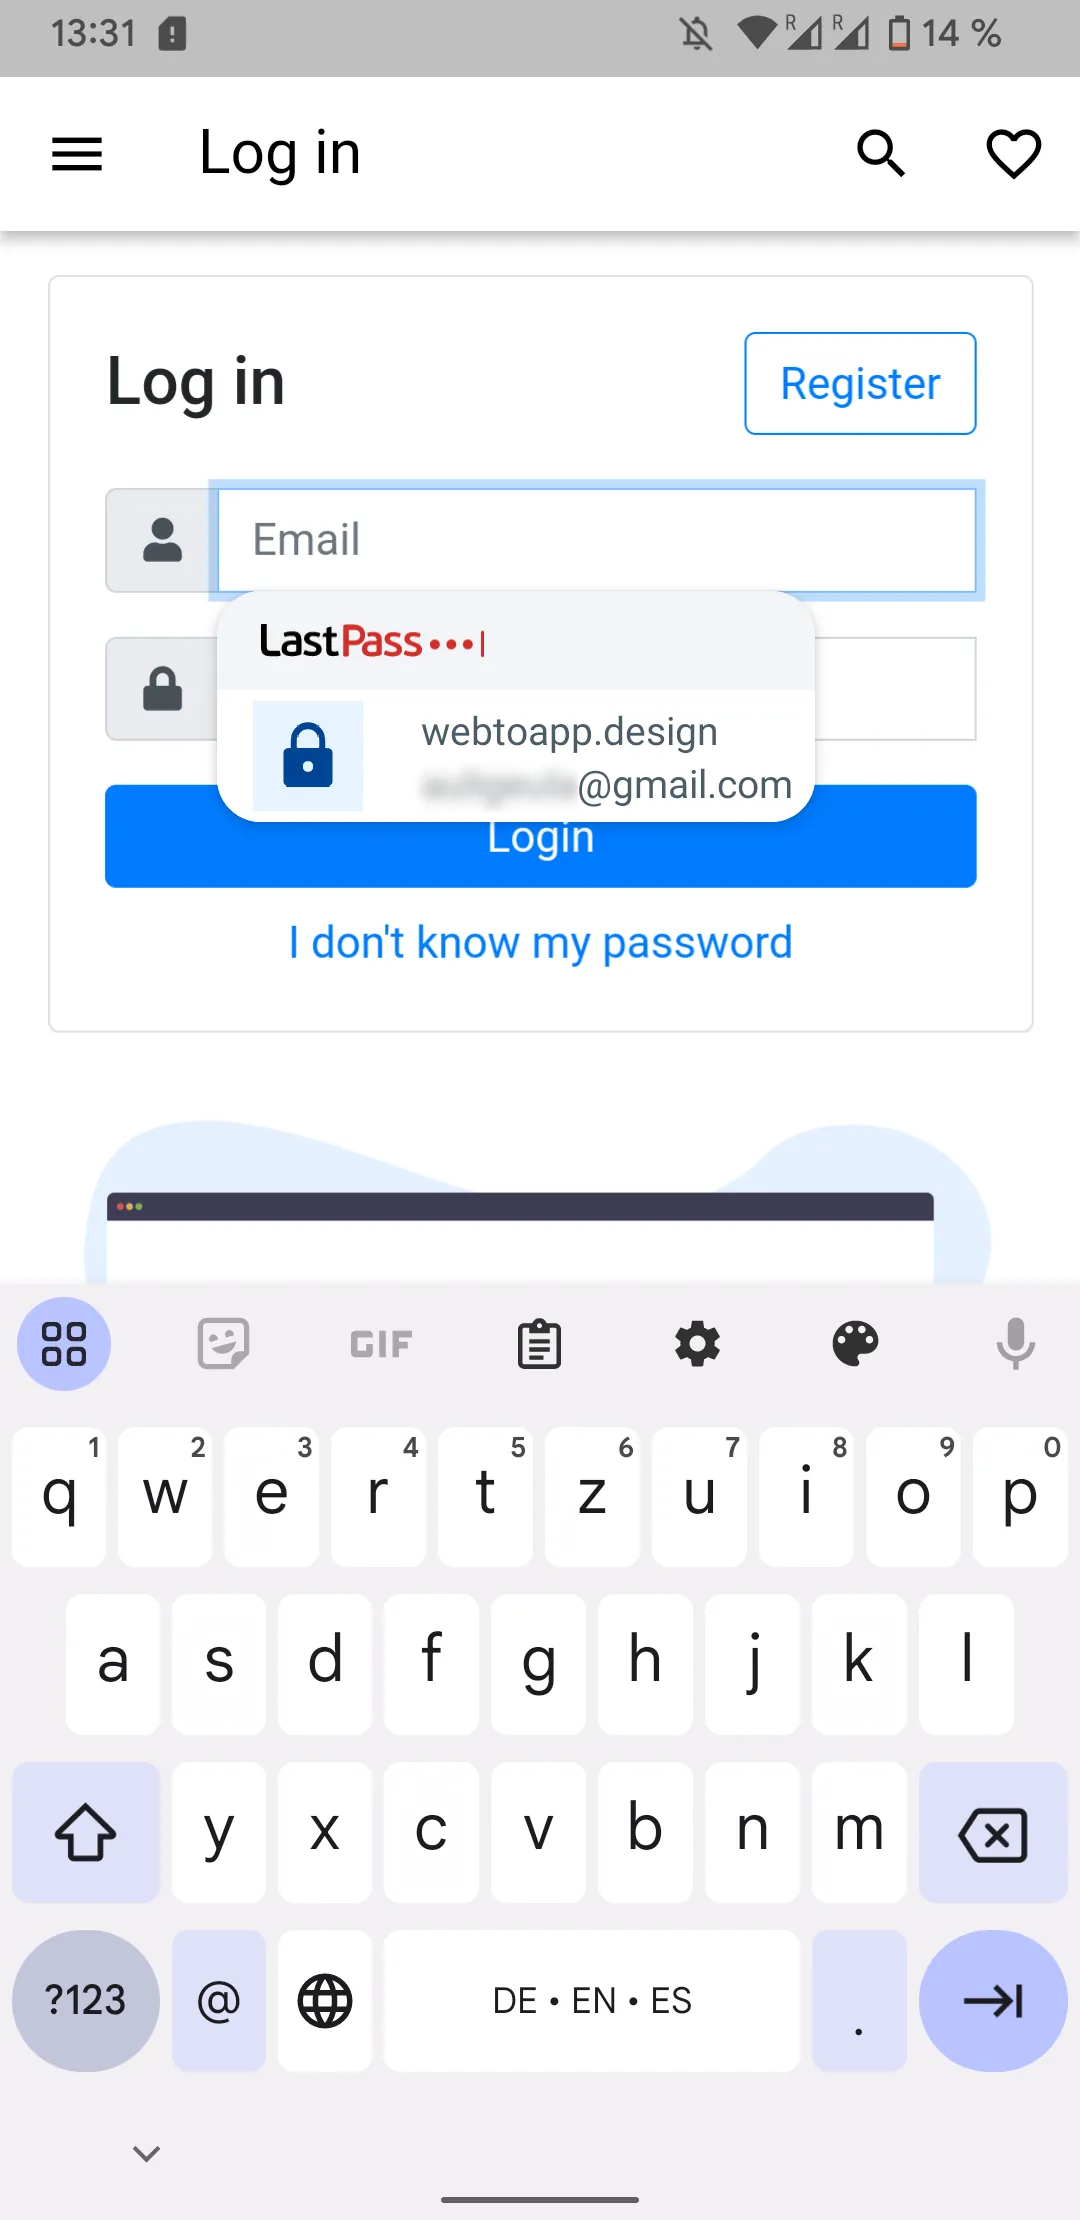 En skärmdump av en LastPass-popup som erbjuder att automatiskt fylla i inloggningsuppgifterna sparade för webtoapp.design-appen.